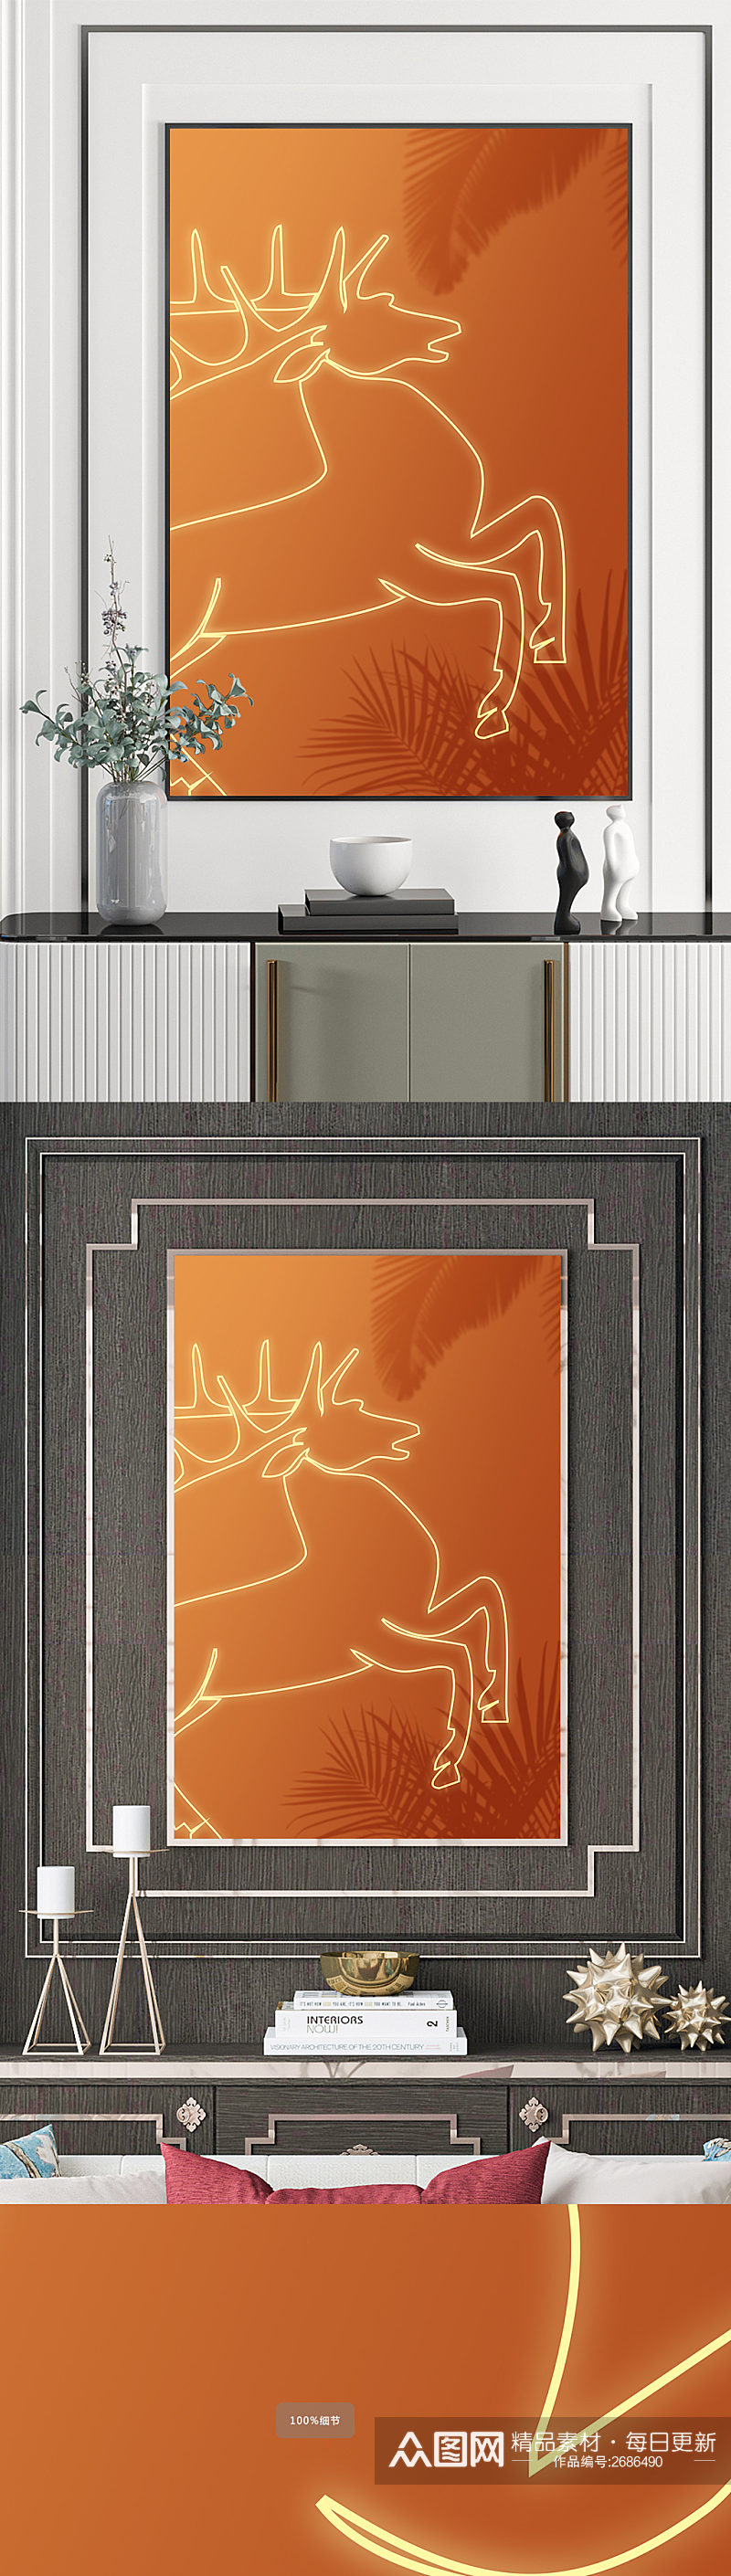 抽象线条麋鹿装饰画素材